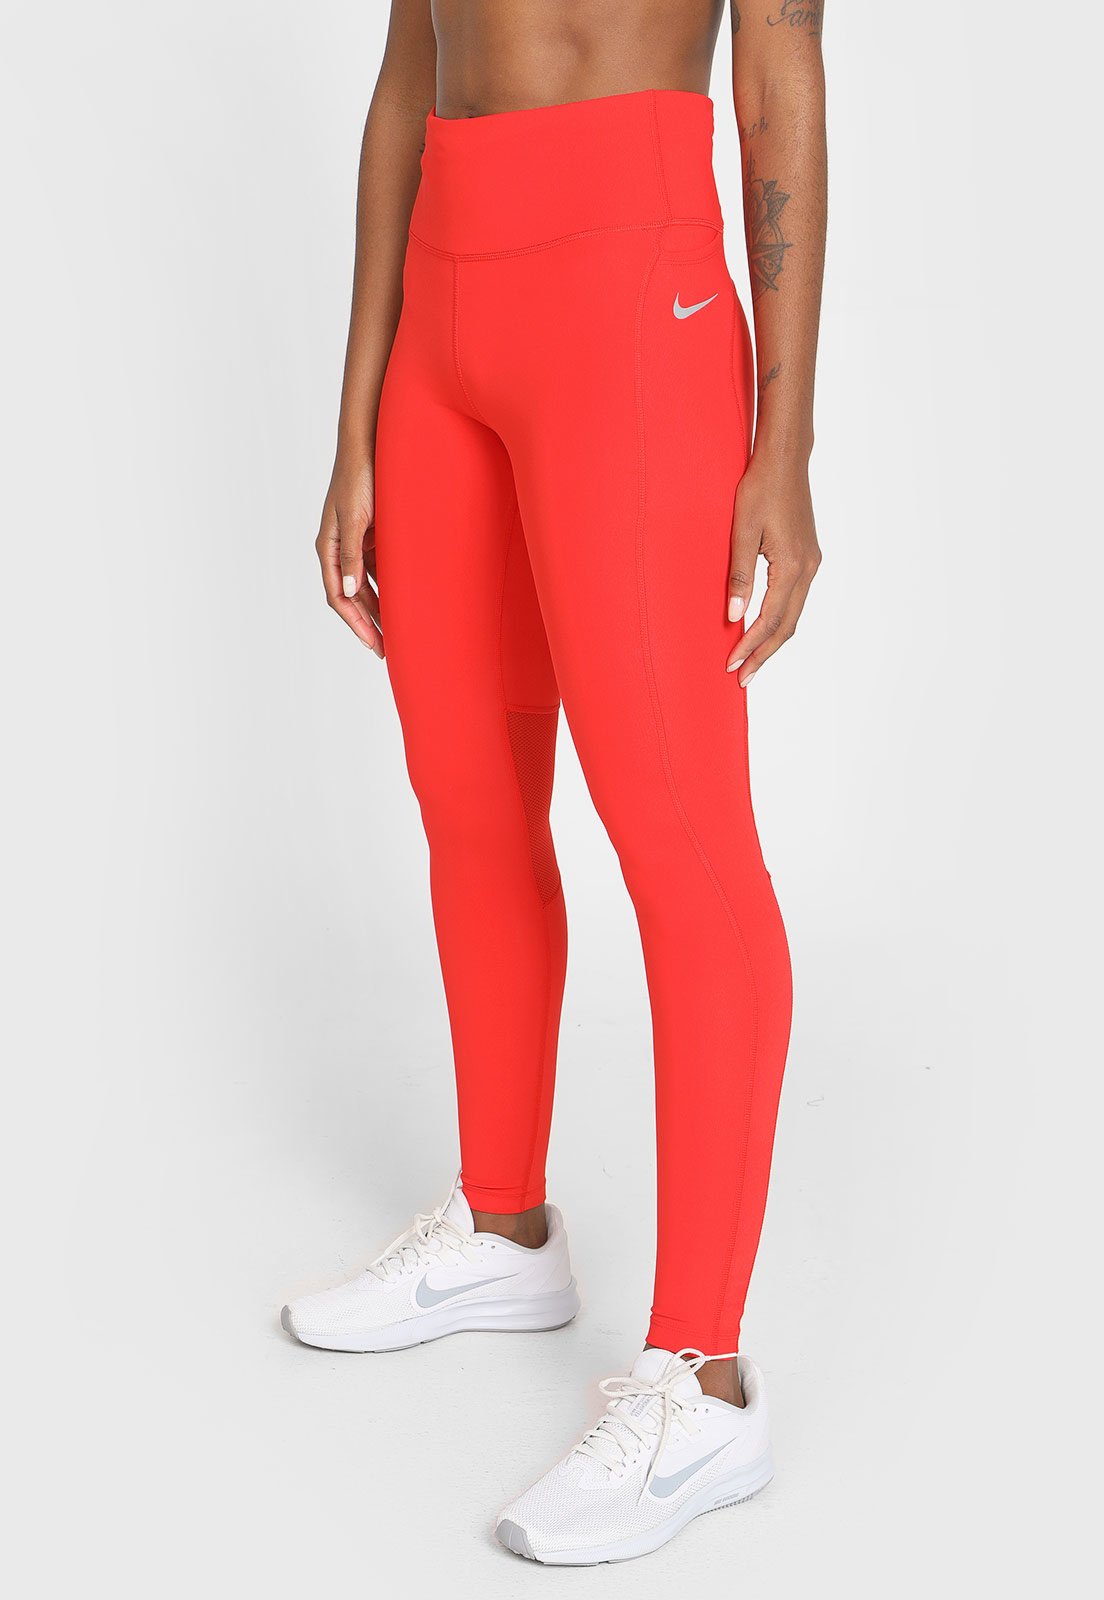 Legging Nike Epic Fast Tght Vermelha - Compre Agora